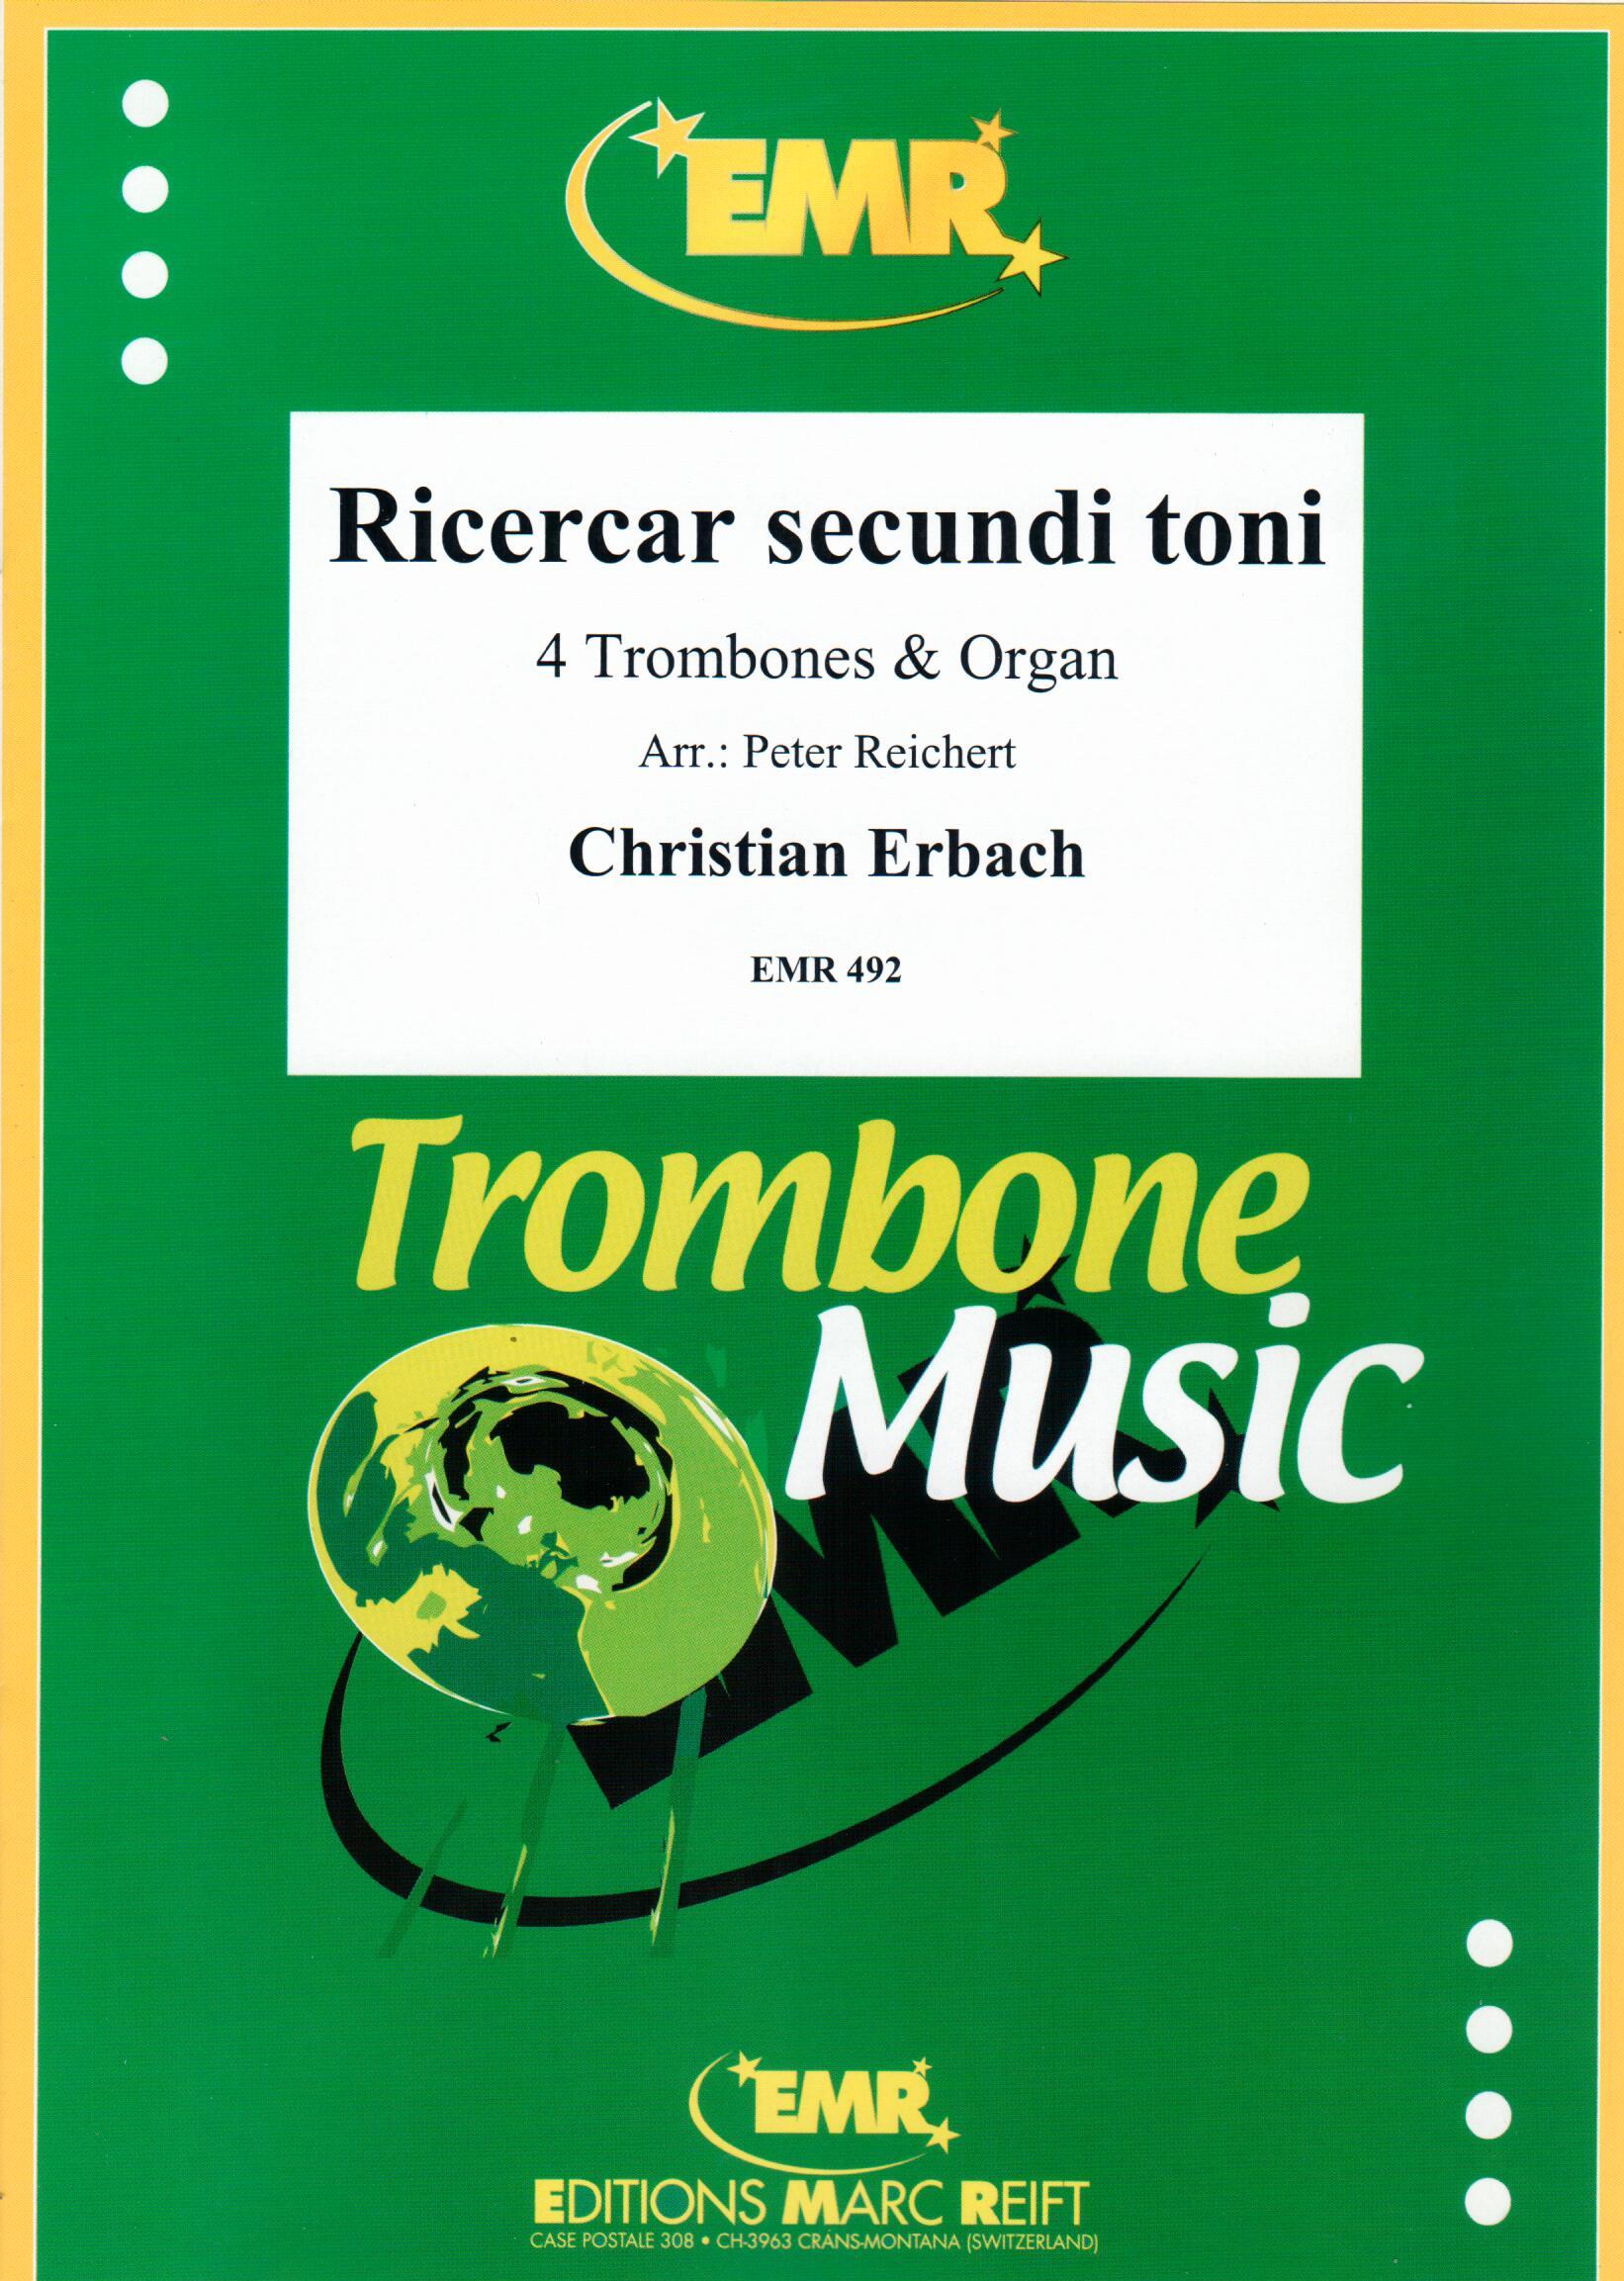 RICERCAR SECUNDI TONI, SOLOS - Trombone